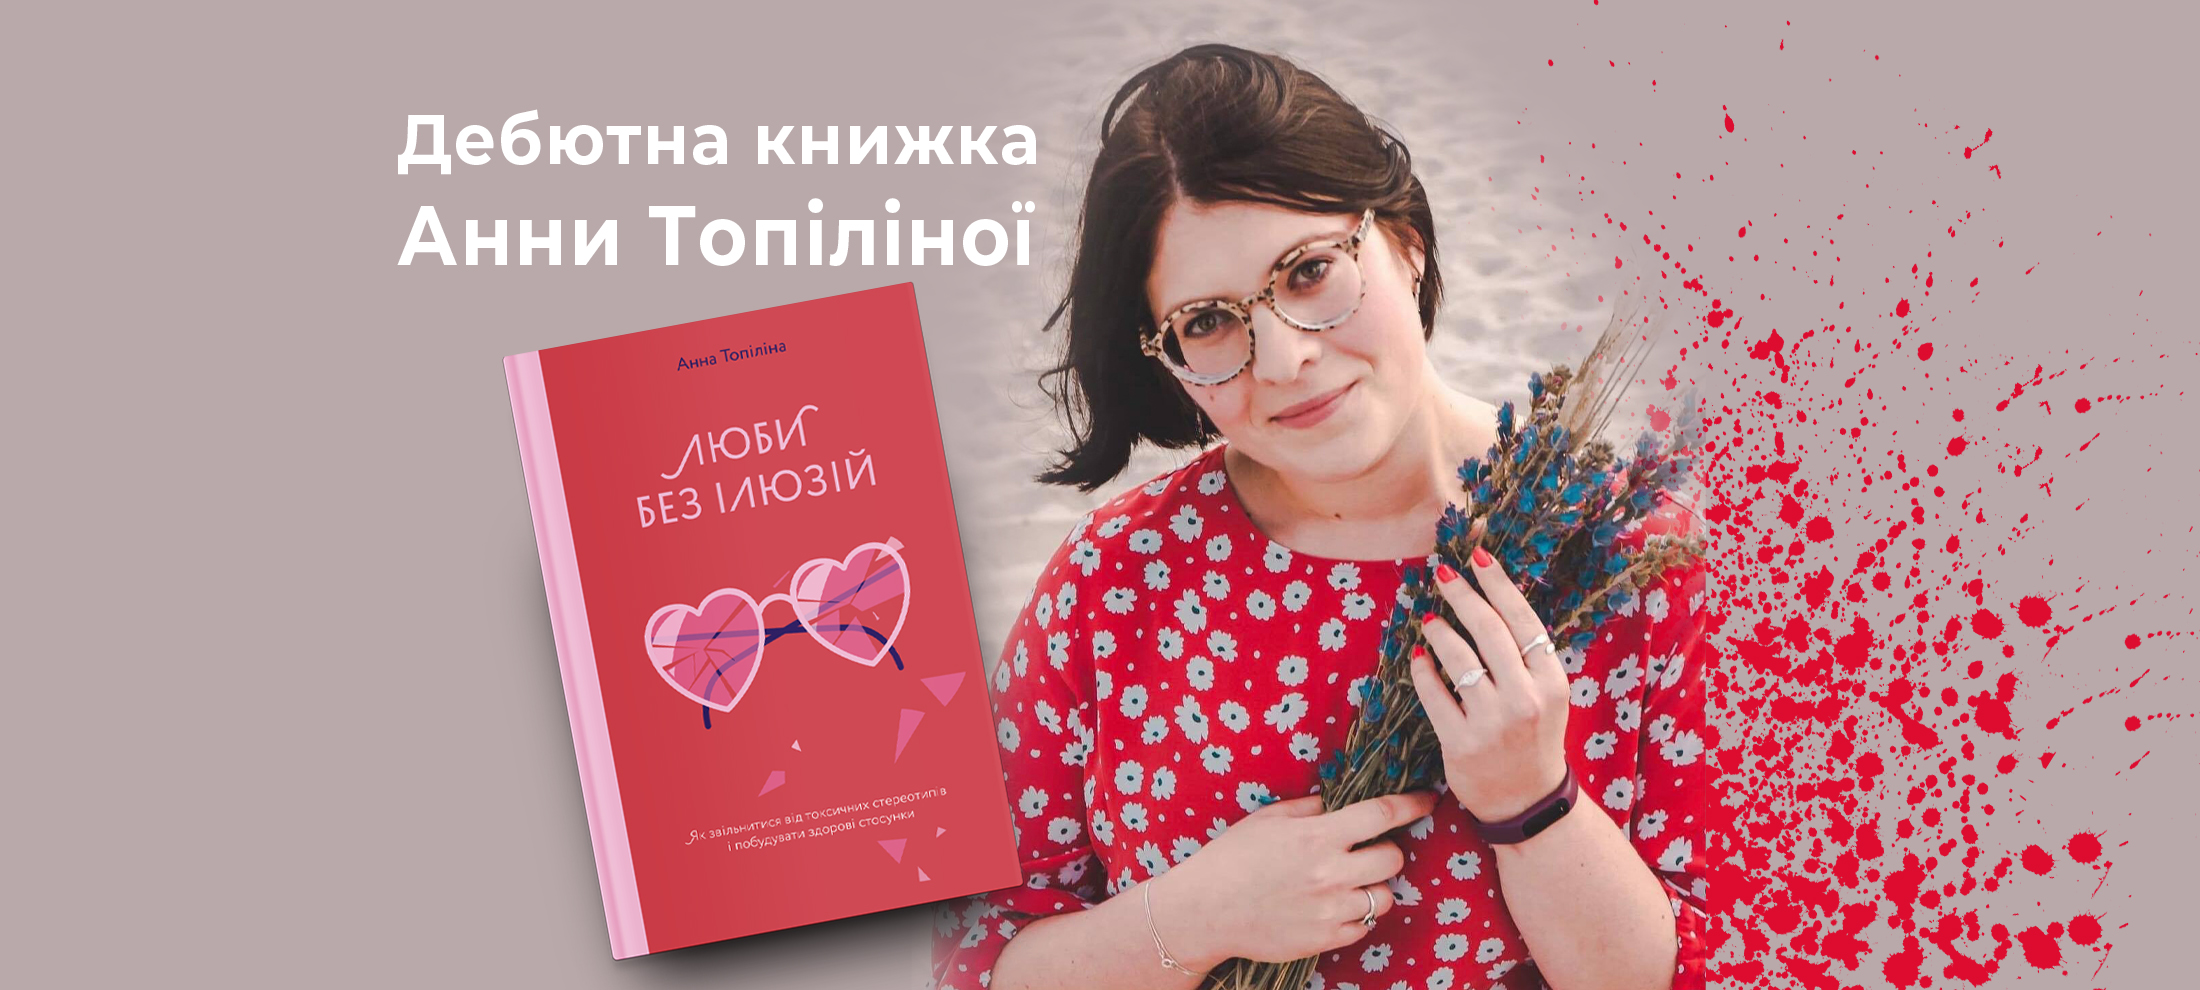 Поліглотка та королева спонтанних рішень: 10 фактів про Анну Топіліну та уривок з її дебютної книжки «Люби без ілюзій» 0